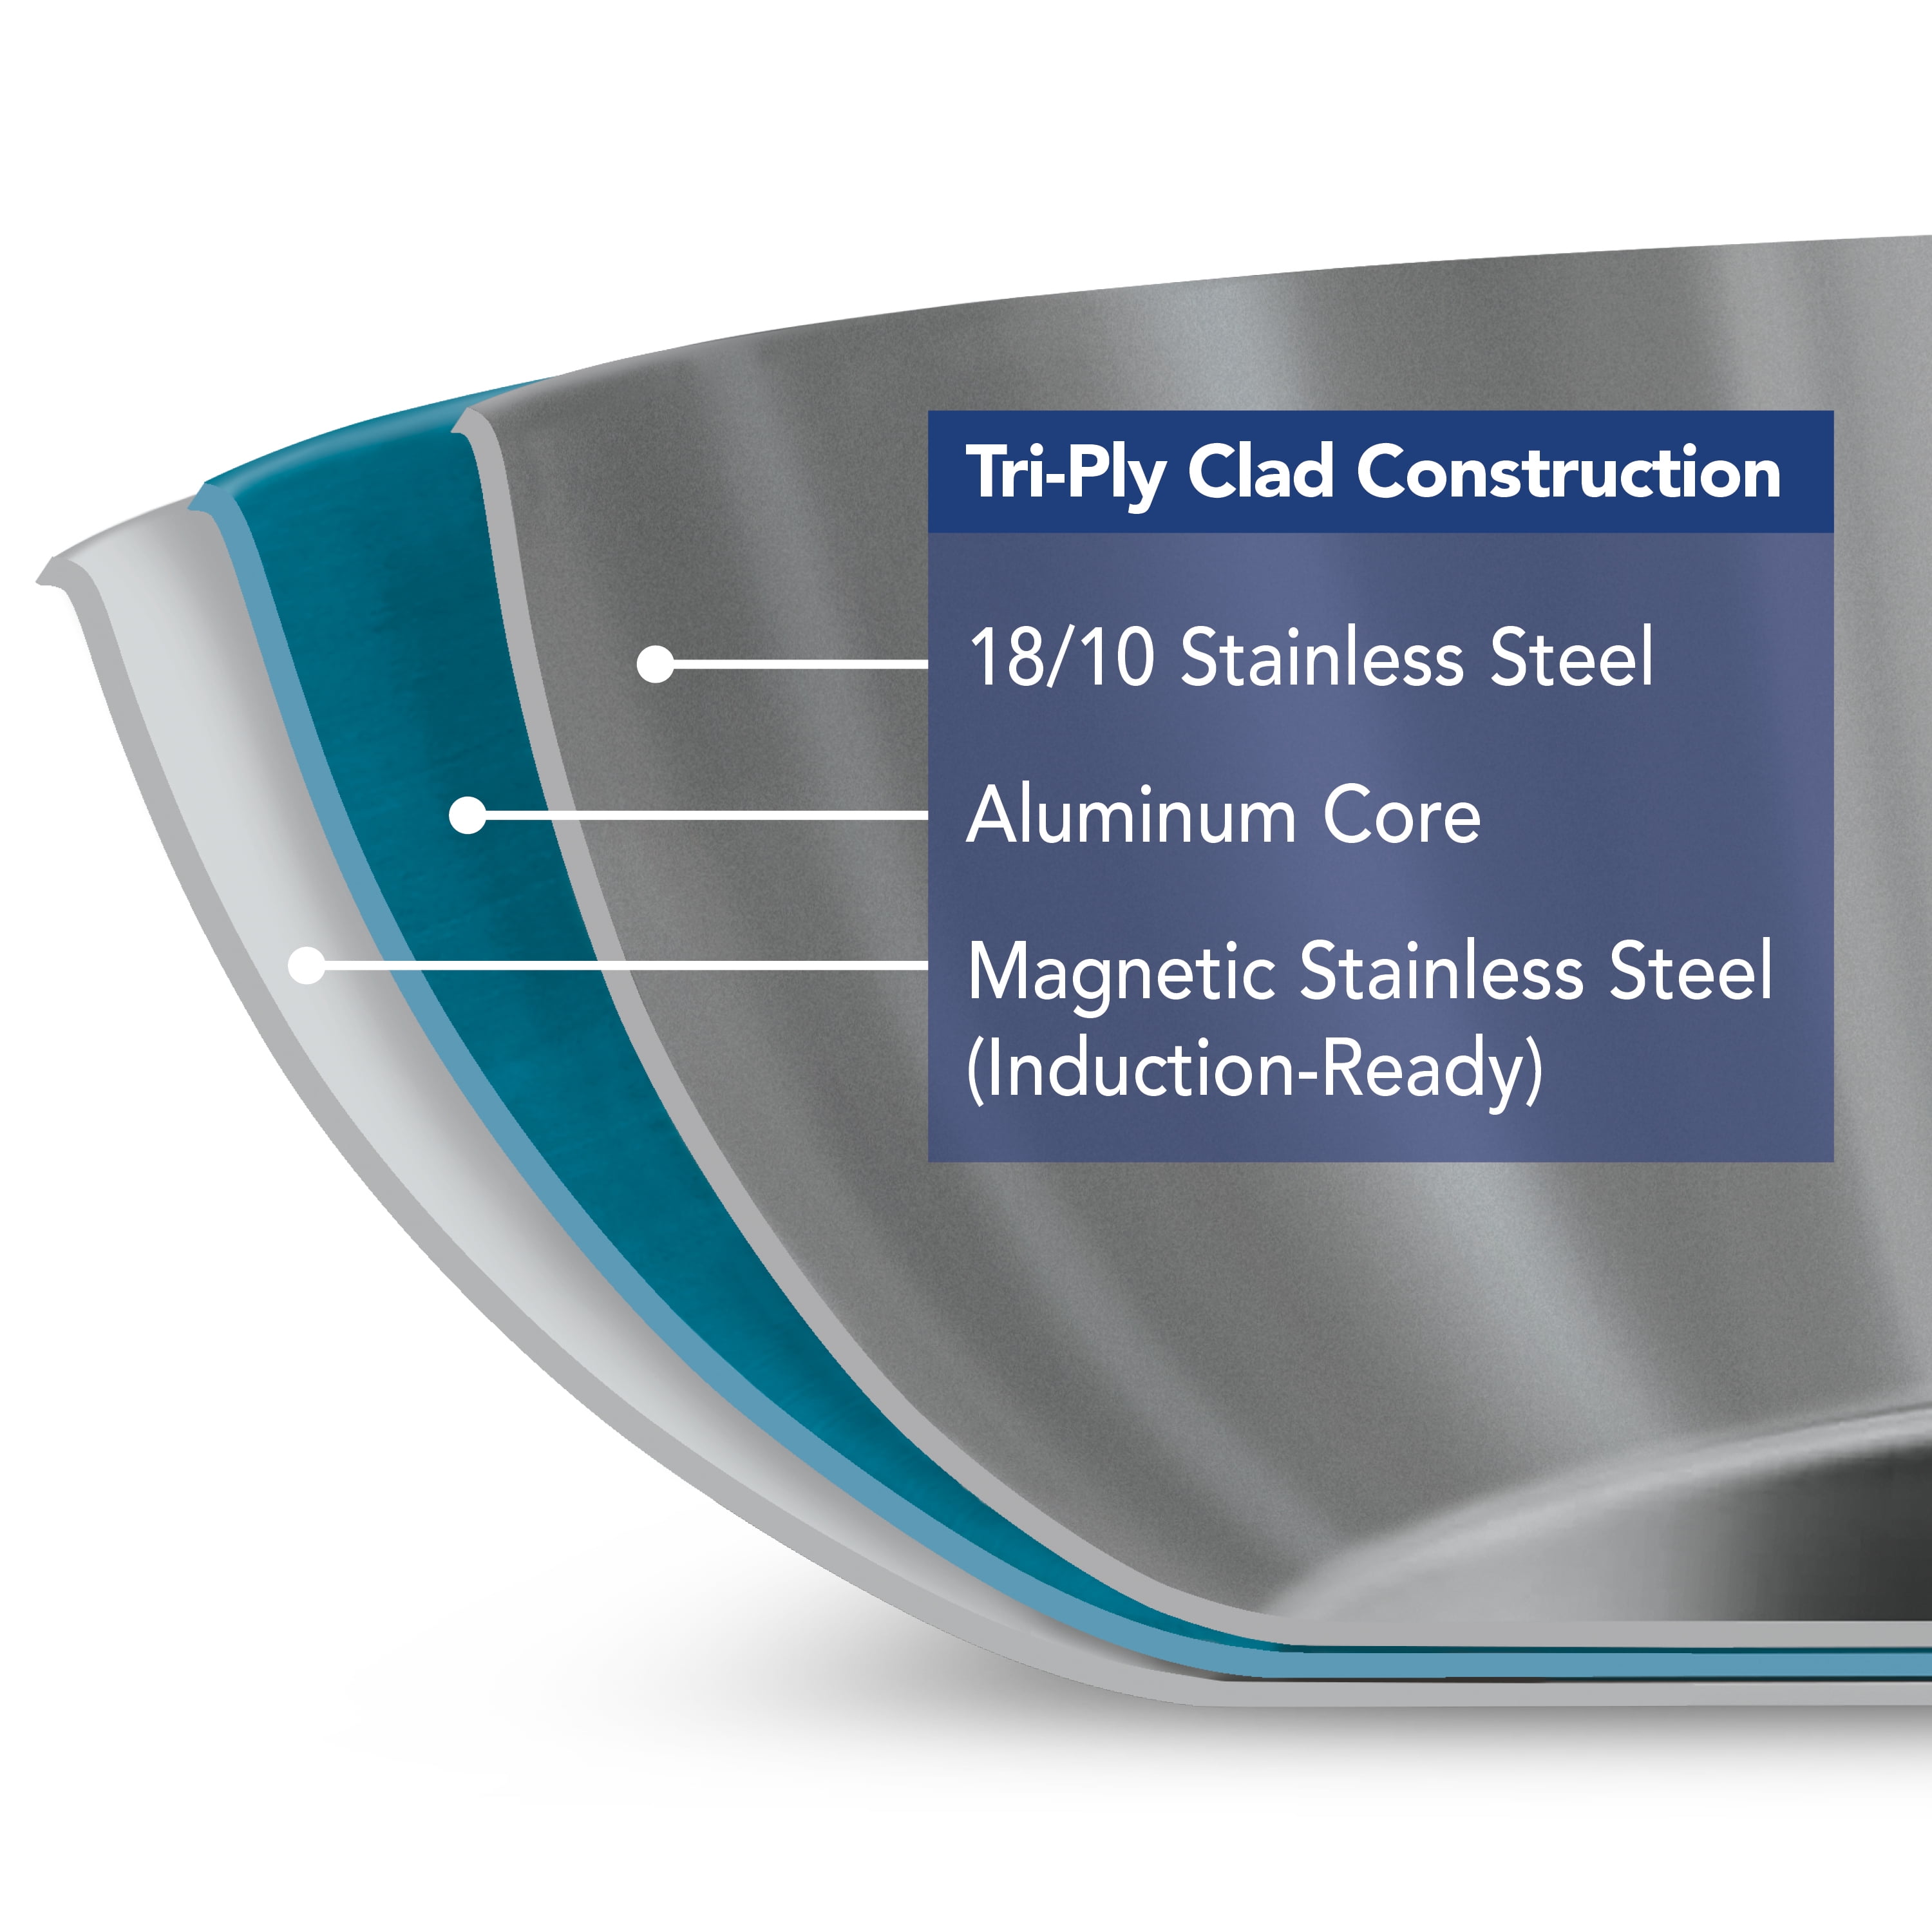 Tramontina Brasil Stainless Steel Clad Skillet Pan INOX 18/10 24cm - no lid